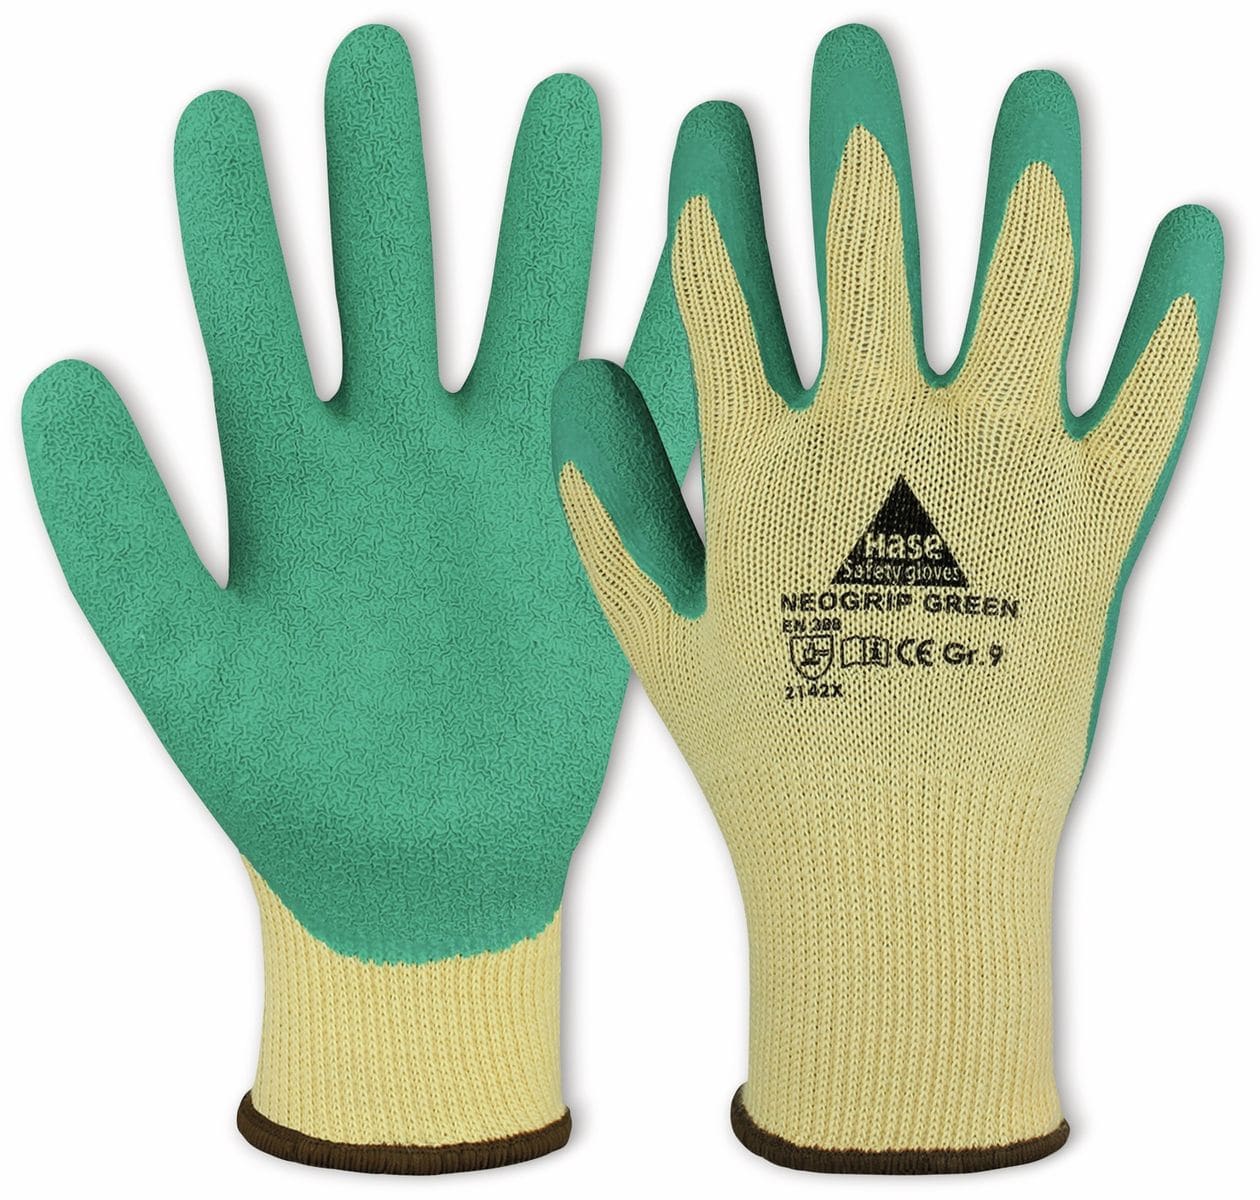 HASE SAFETY GLOVES Latex-Arbeitshandschuh, Neogrip Green, EN 388, EN 420, beige/grün, Größe 11 von Hase Safety gloves